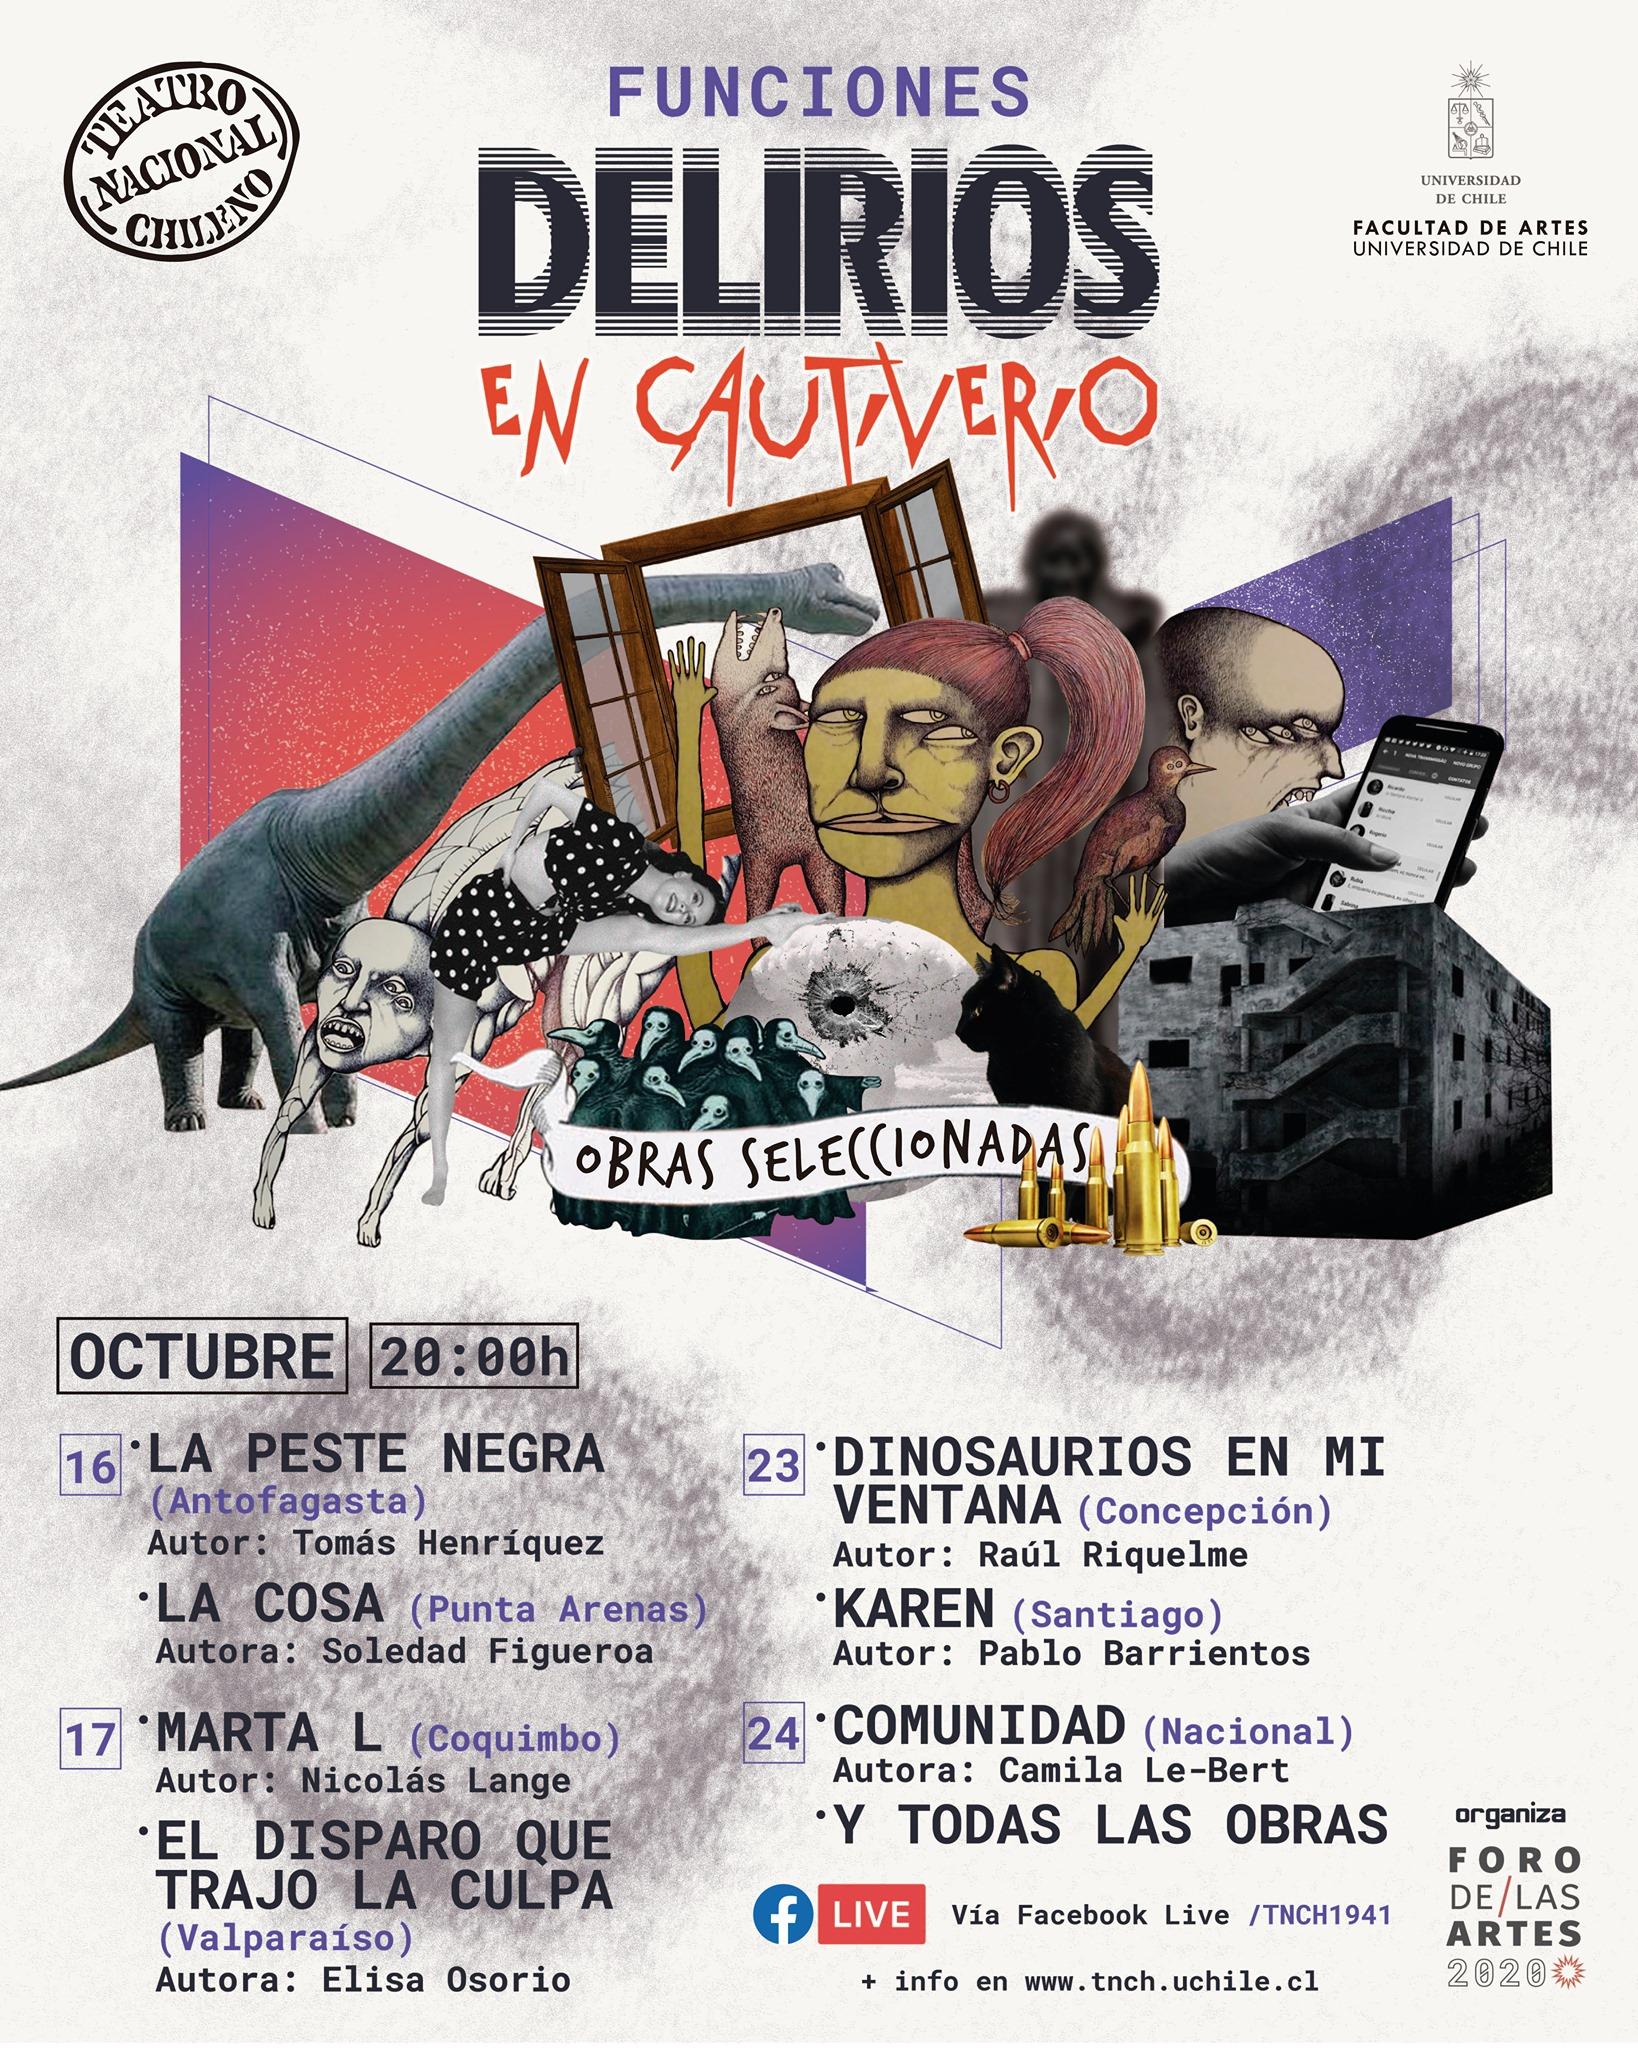 La obras se transmitirán vía Facebook Live en la página del Teatro Nacional Chileno.